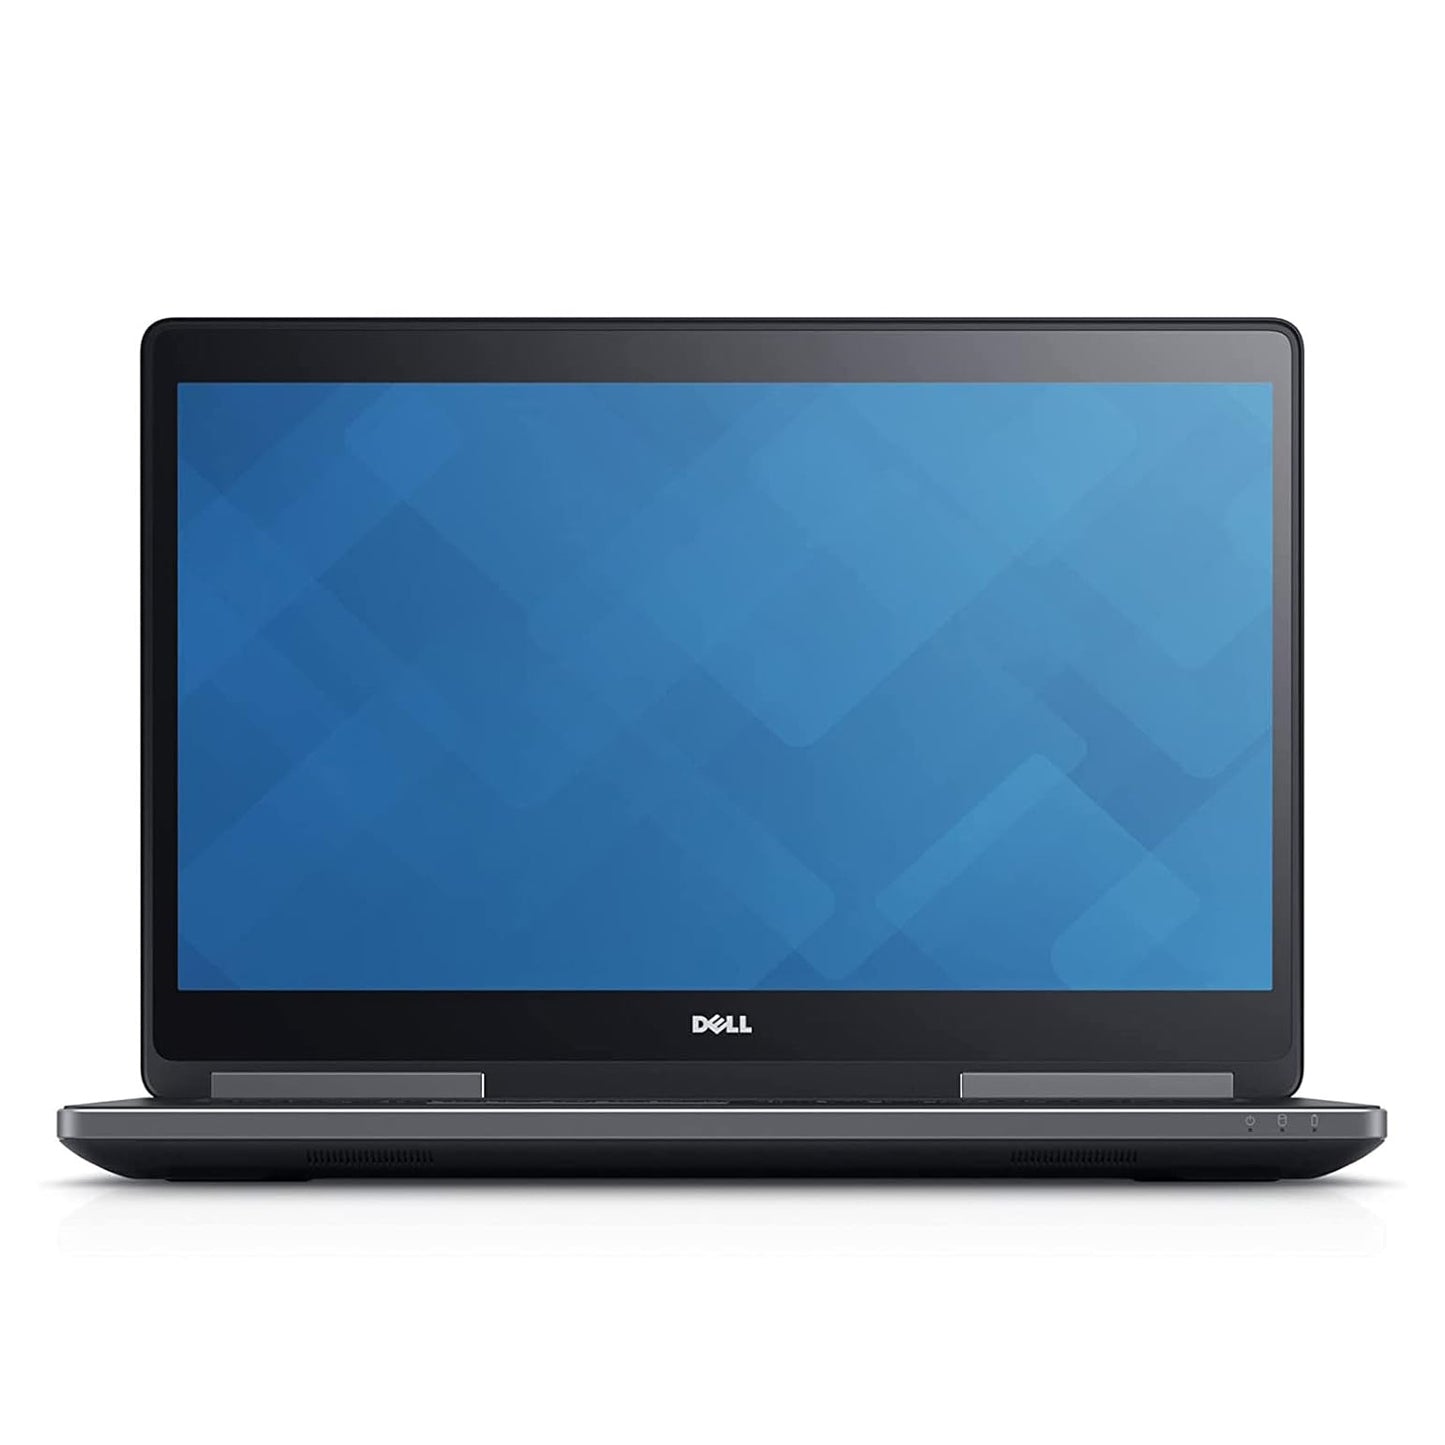 Dell Precision 7710 Mobile Workstation Core i7-6820HQ Radeon R9 M375X 17.3" Laptop Offer (Open Box)